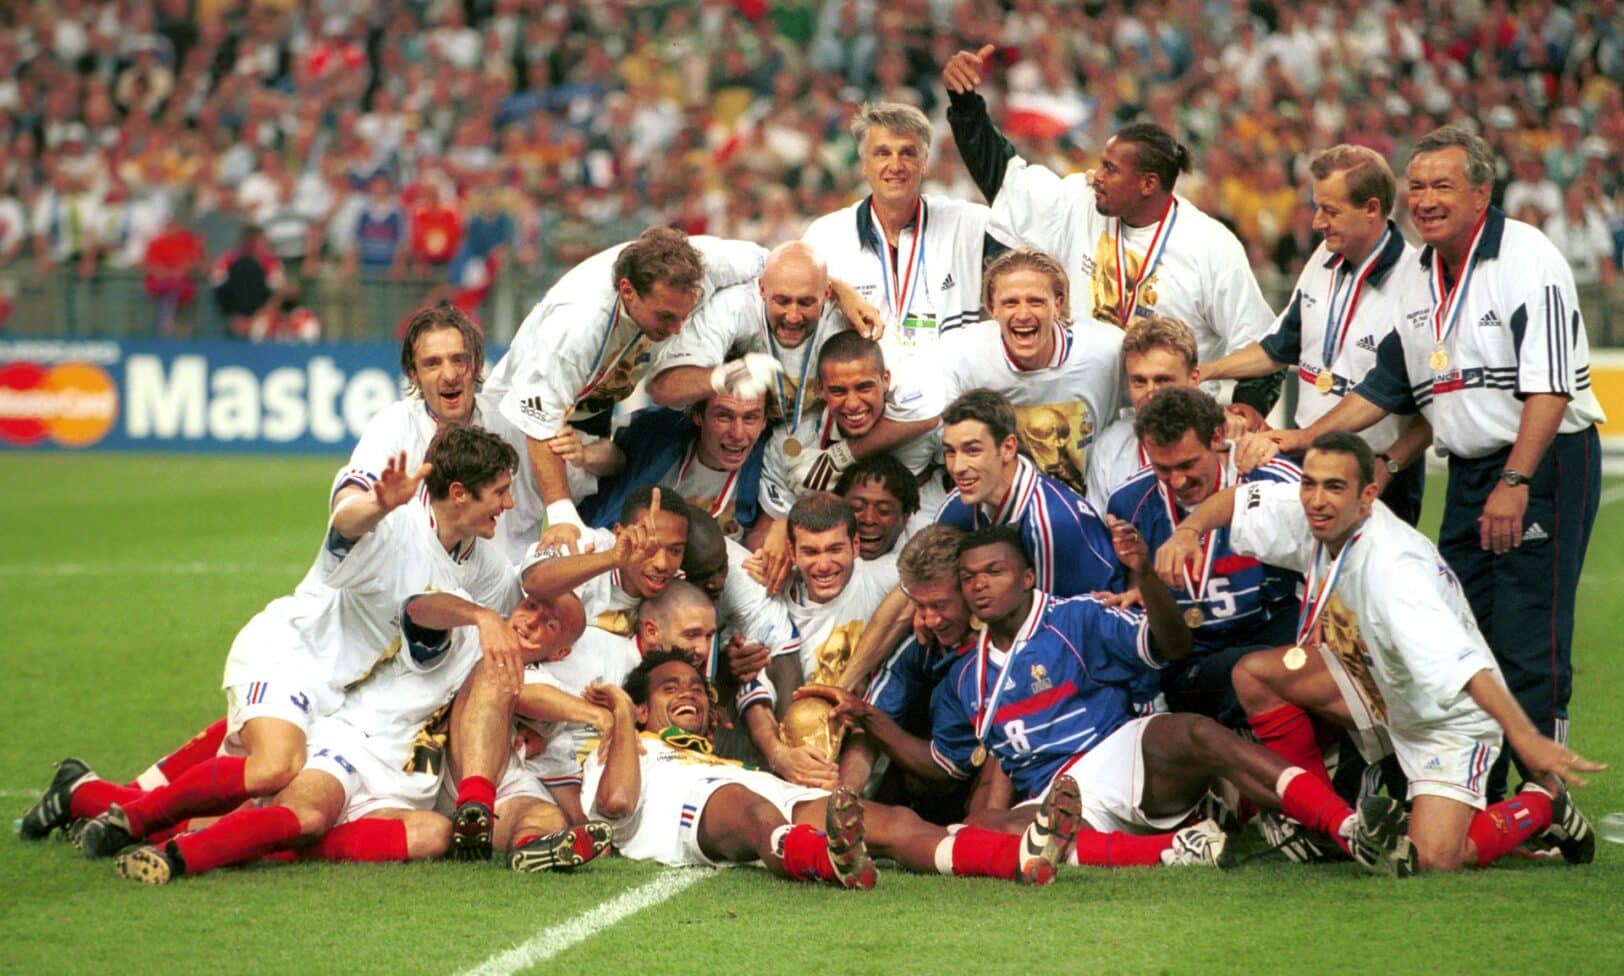 Joie Equipe de France - 12.07.1998 - France / Bresil - Finale Coupe du Monde 1998 - Stade de France. Raconté par Youri Djorkaeff 